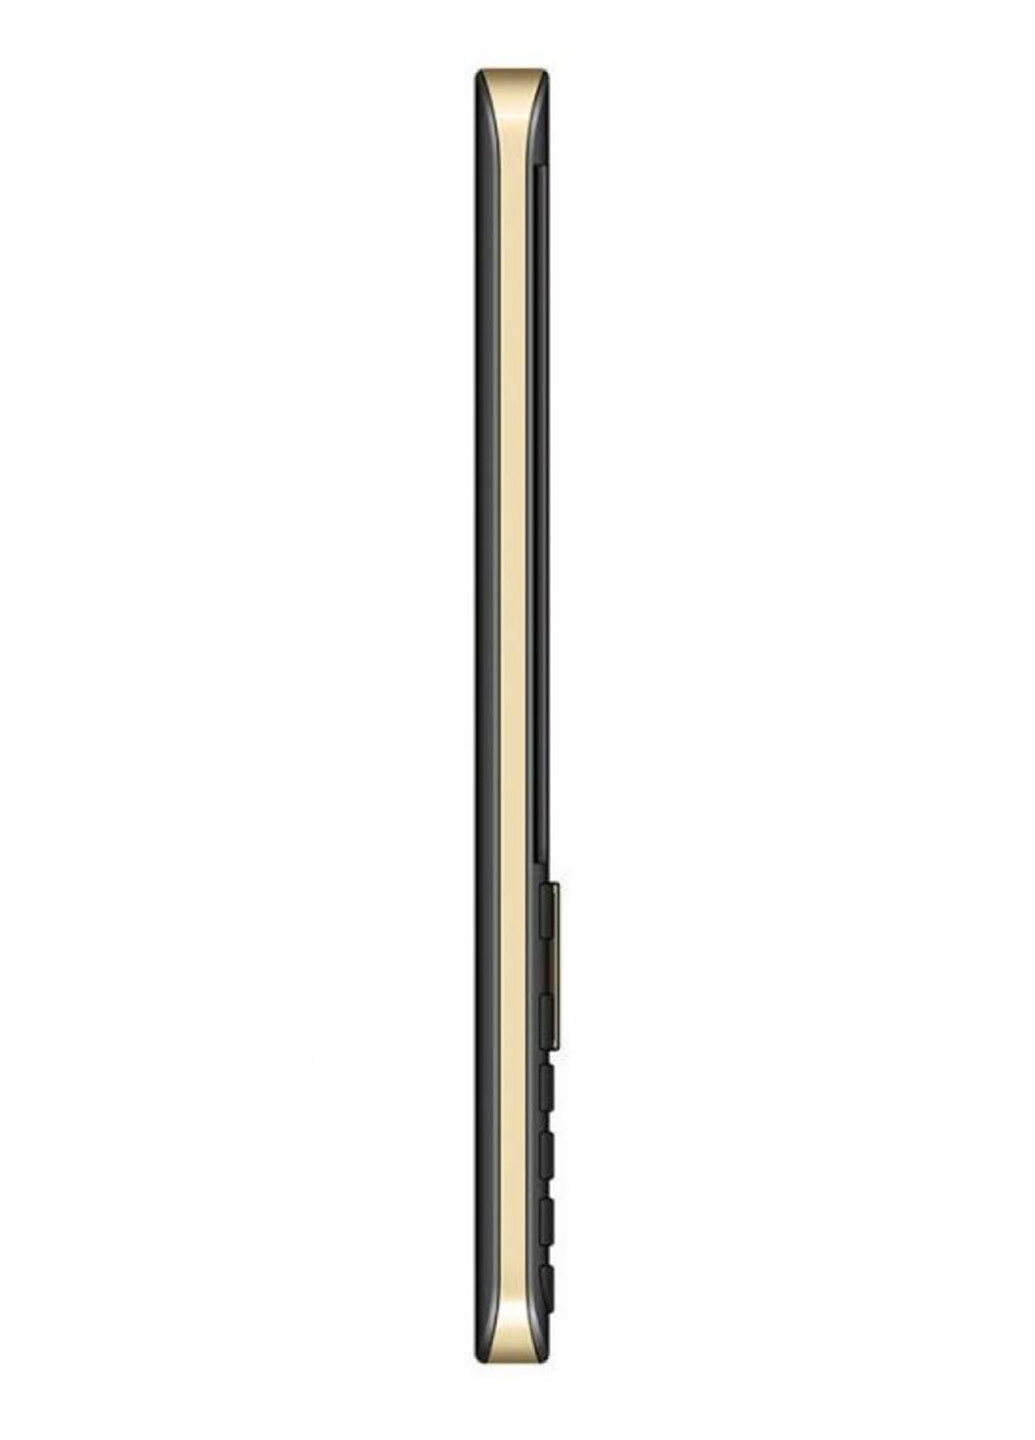 Мобильный телефон Maxcom mm236 black-gold (132824483)